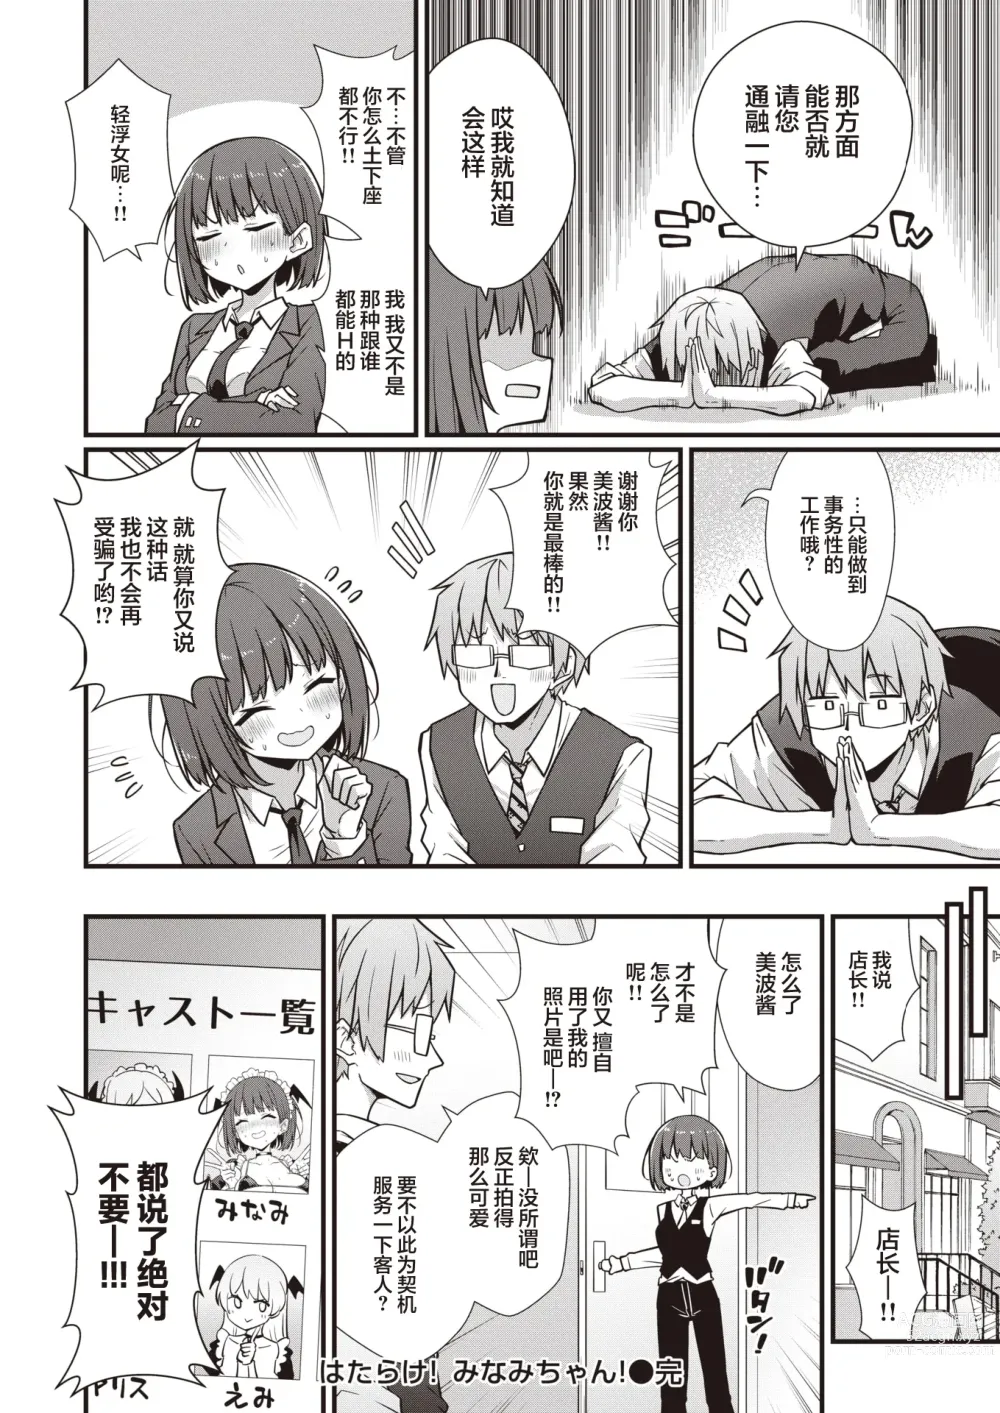 Page 21 of manga Hatarake! Minami-chan!